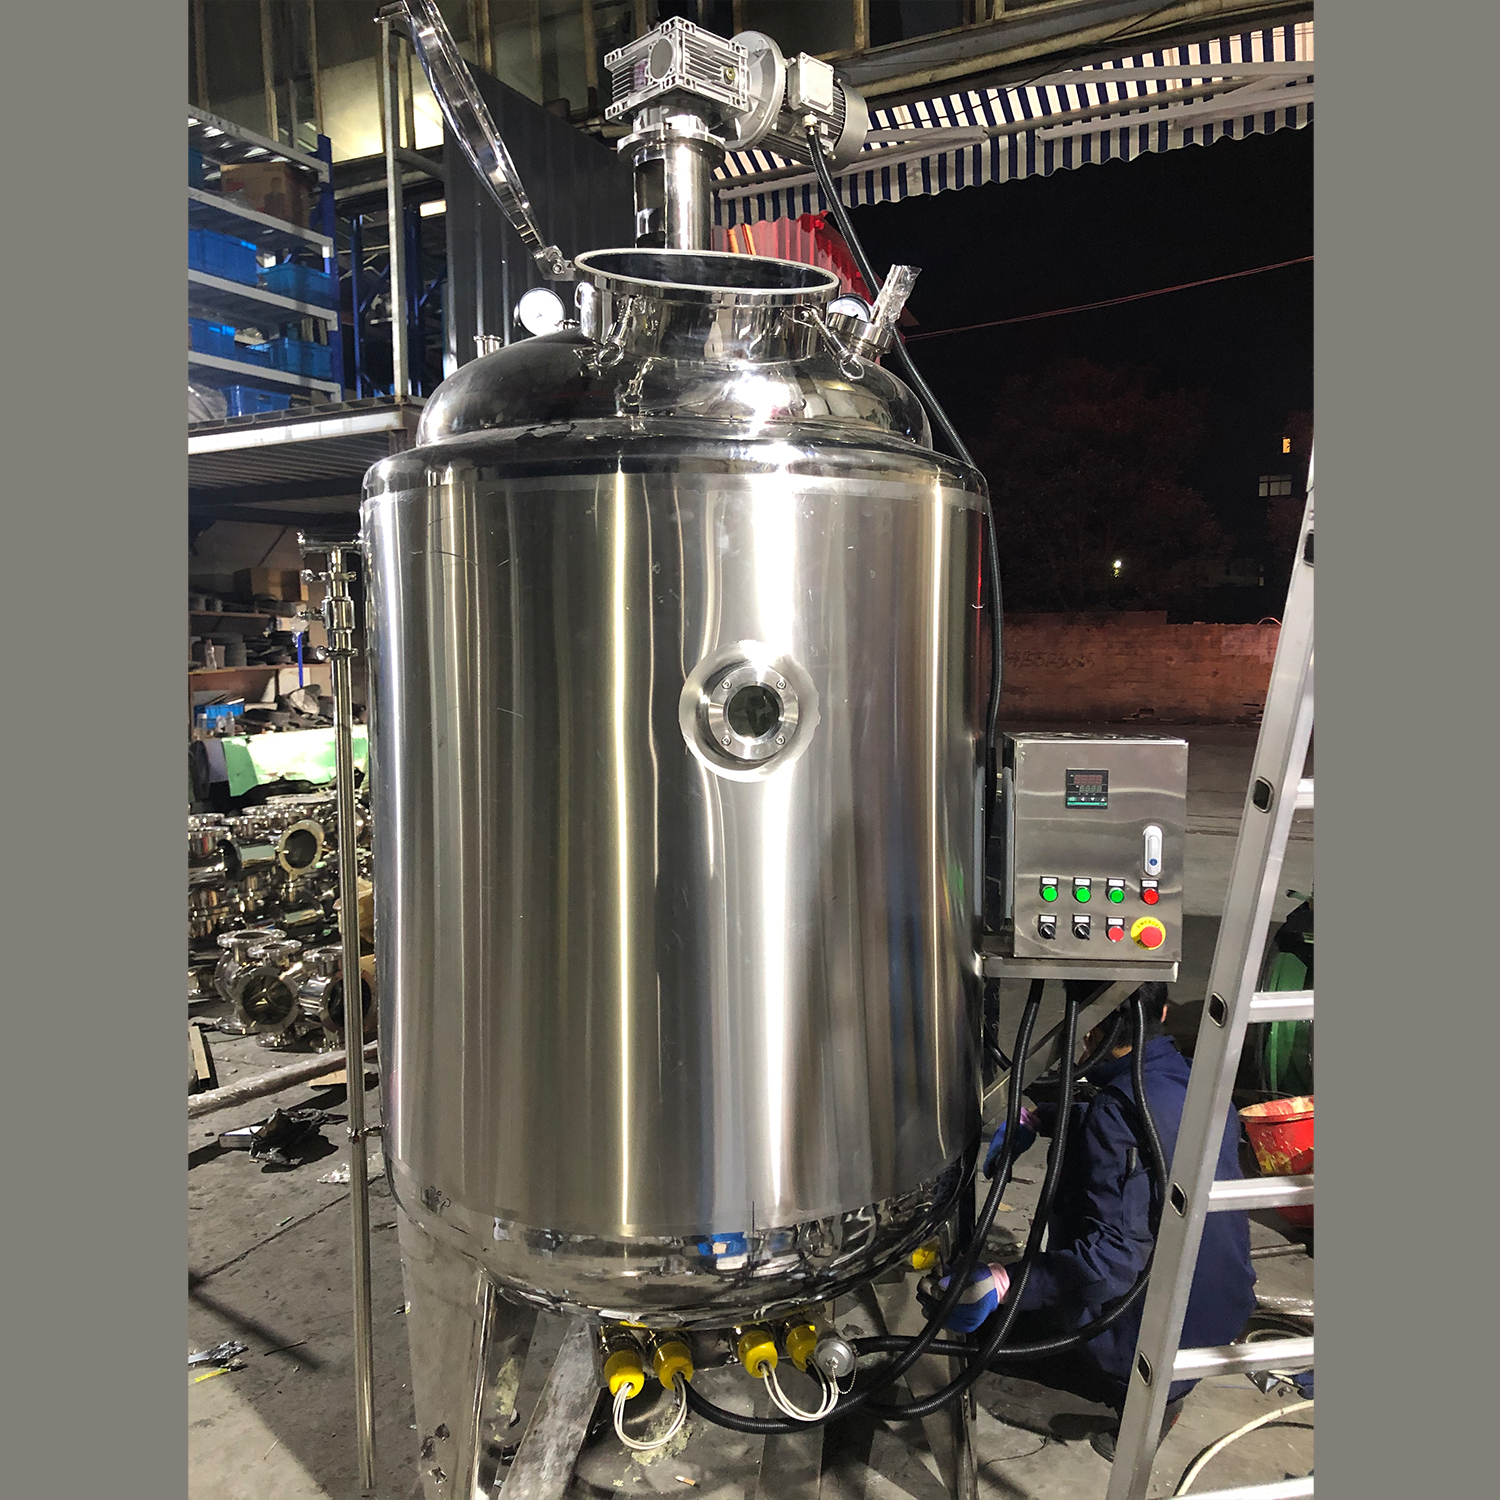 10000L almacenamiento vertical sanitario agitando tanques de mezcla tanque de recipiente agitador magnético